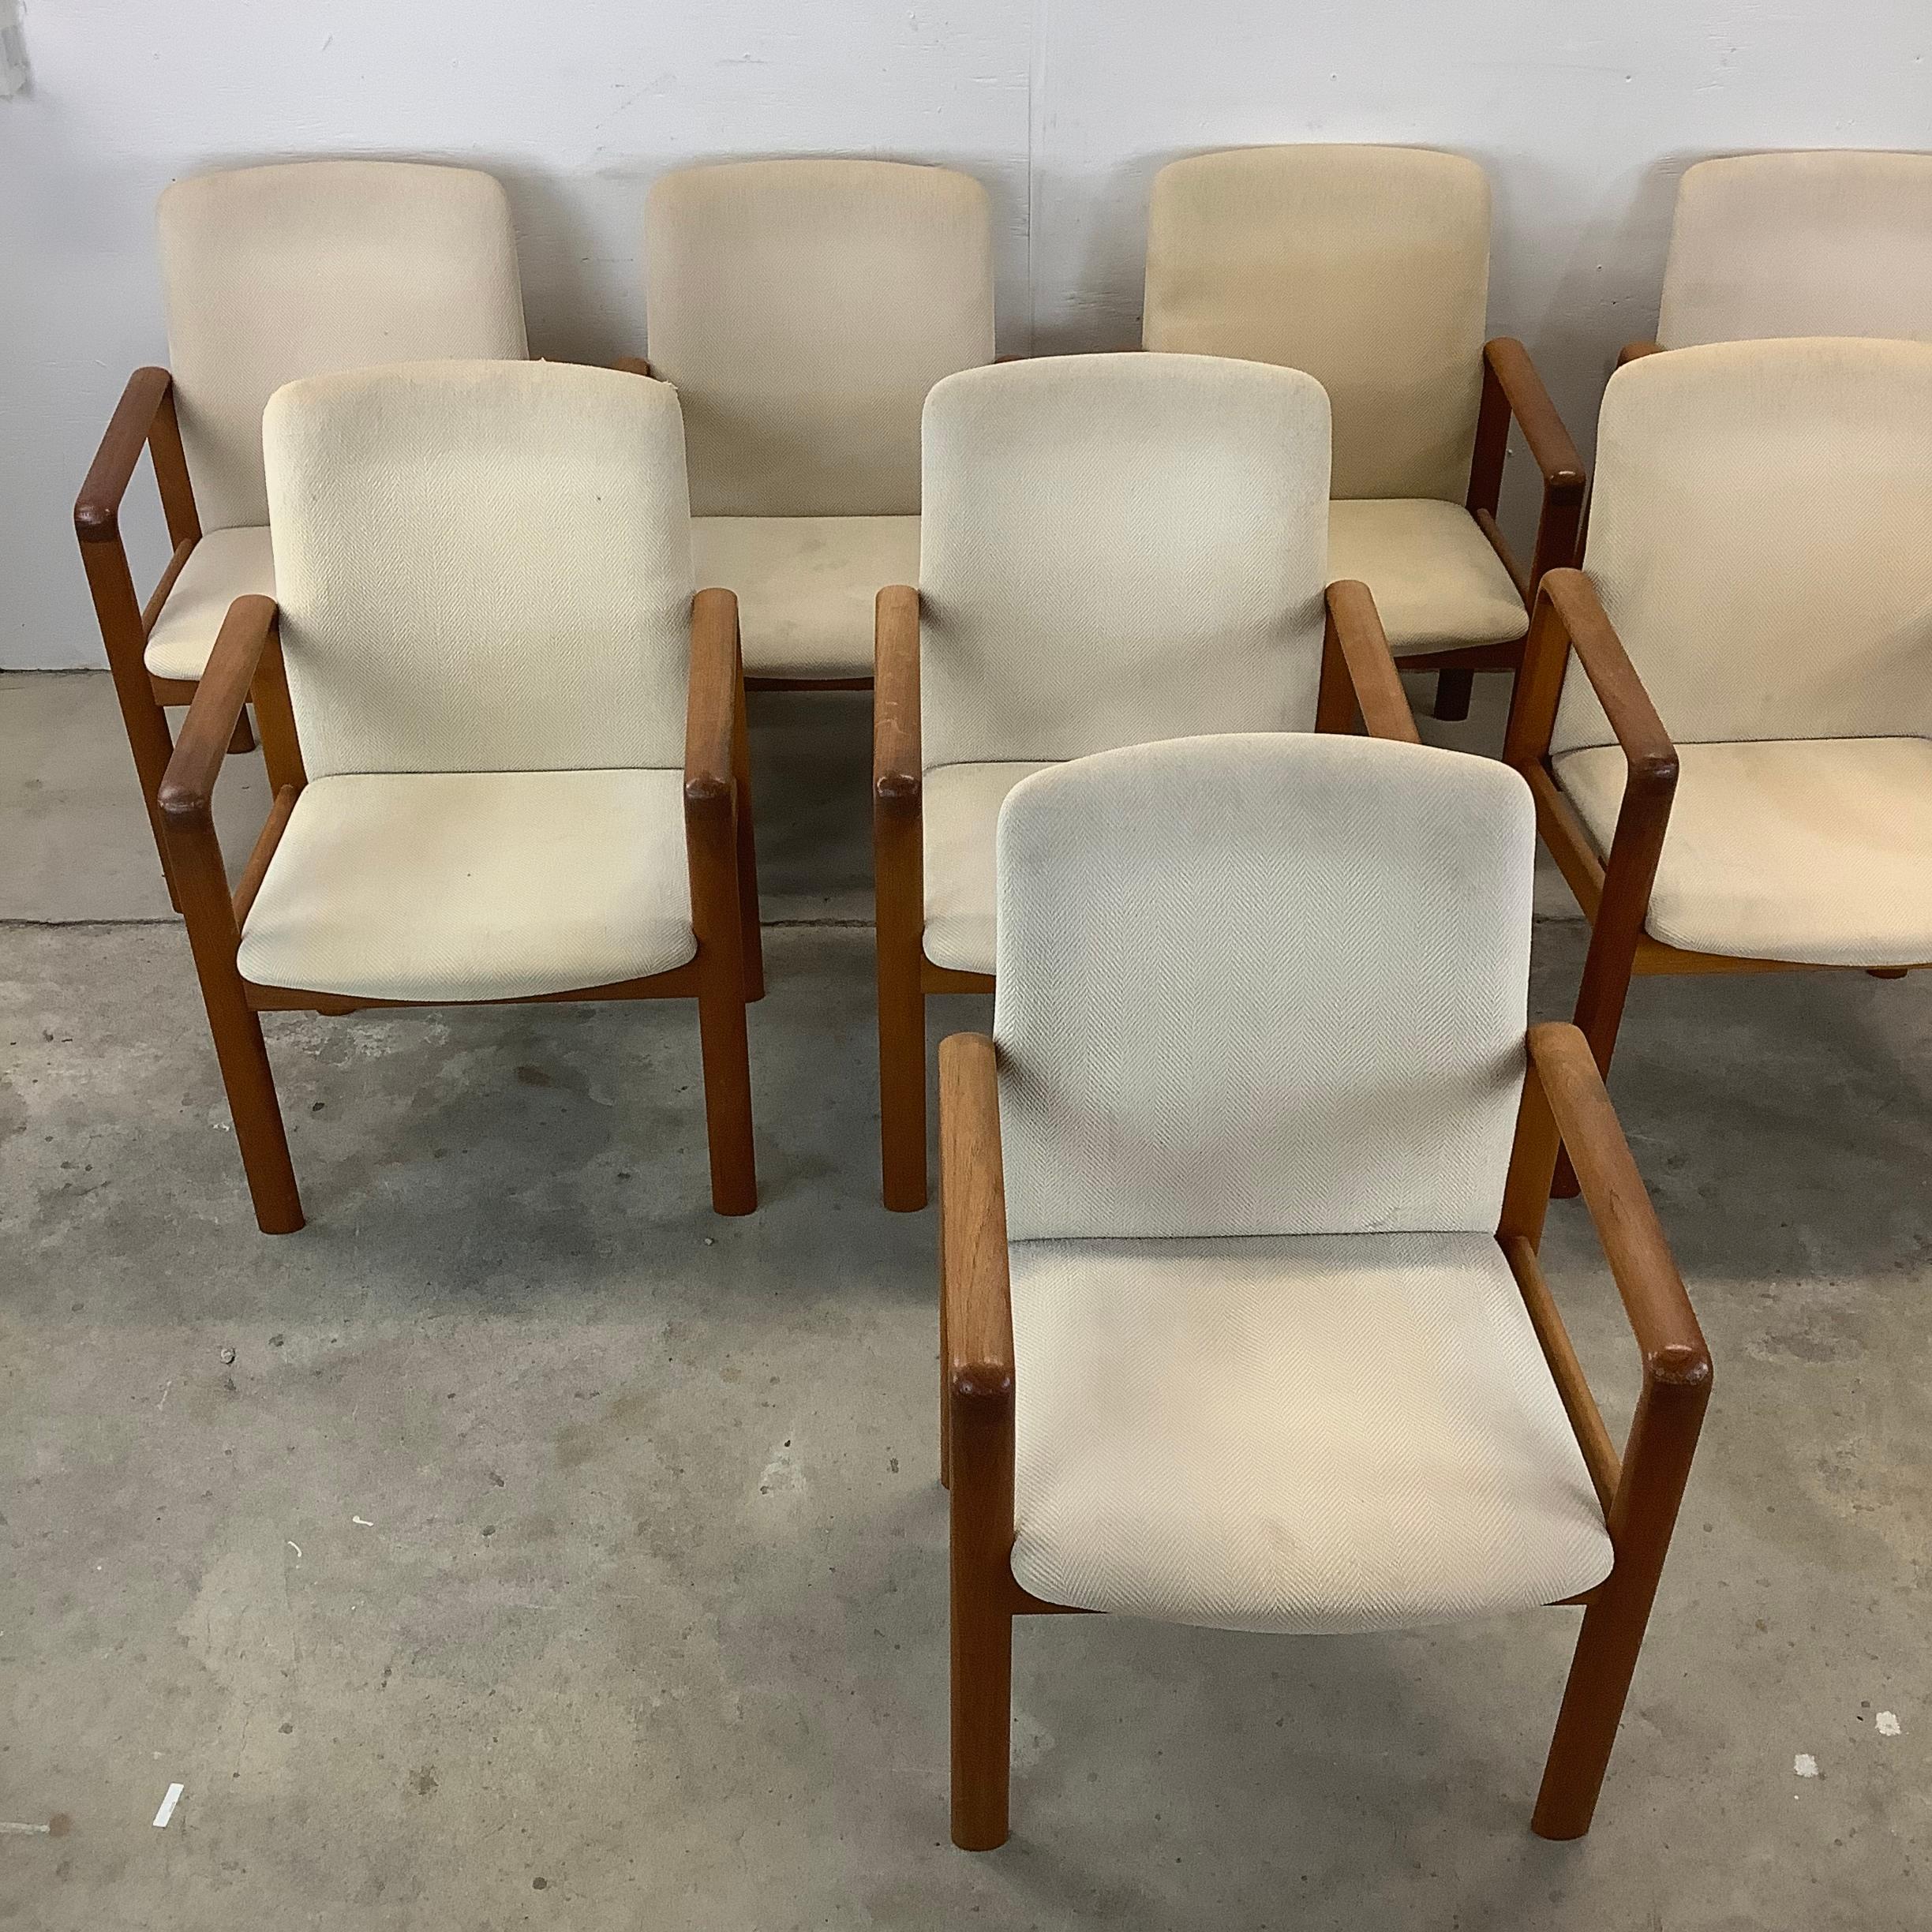 Dieses Set aus acht skandinavisch-modernen Teakholzsesseln von Jesper Furniture ist ein atemberaubendes Ensemble, das die Essenz dänischer Design-Exzellenz verkörpert. Diese mit Präzision und Sorgfalt gefertigten Sessel sind nicht einfach nur